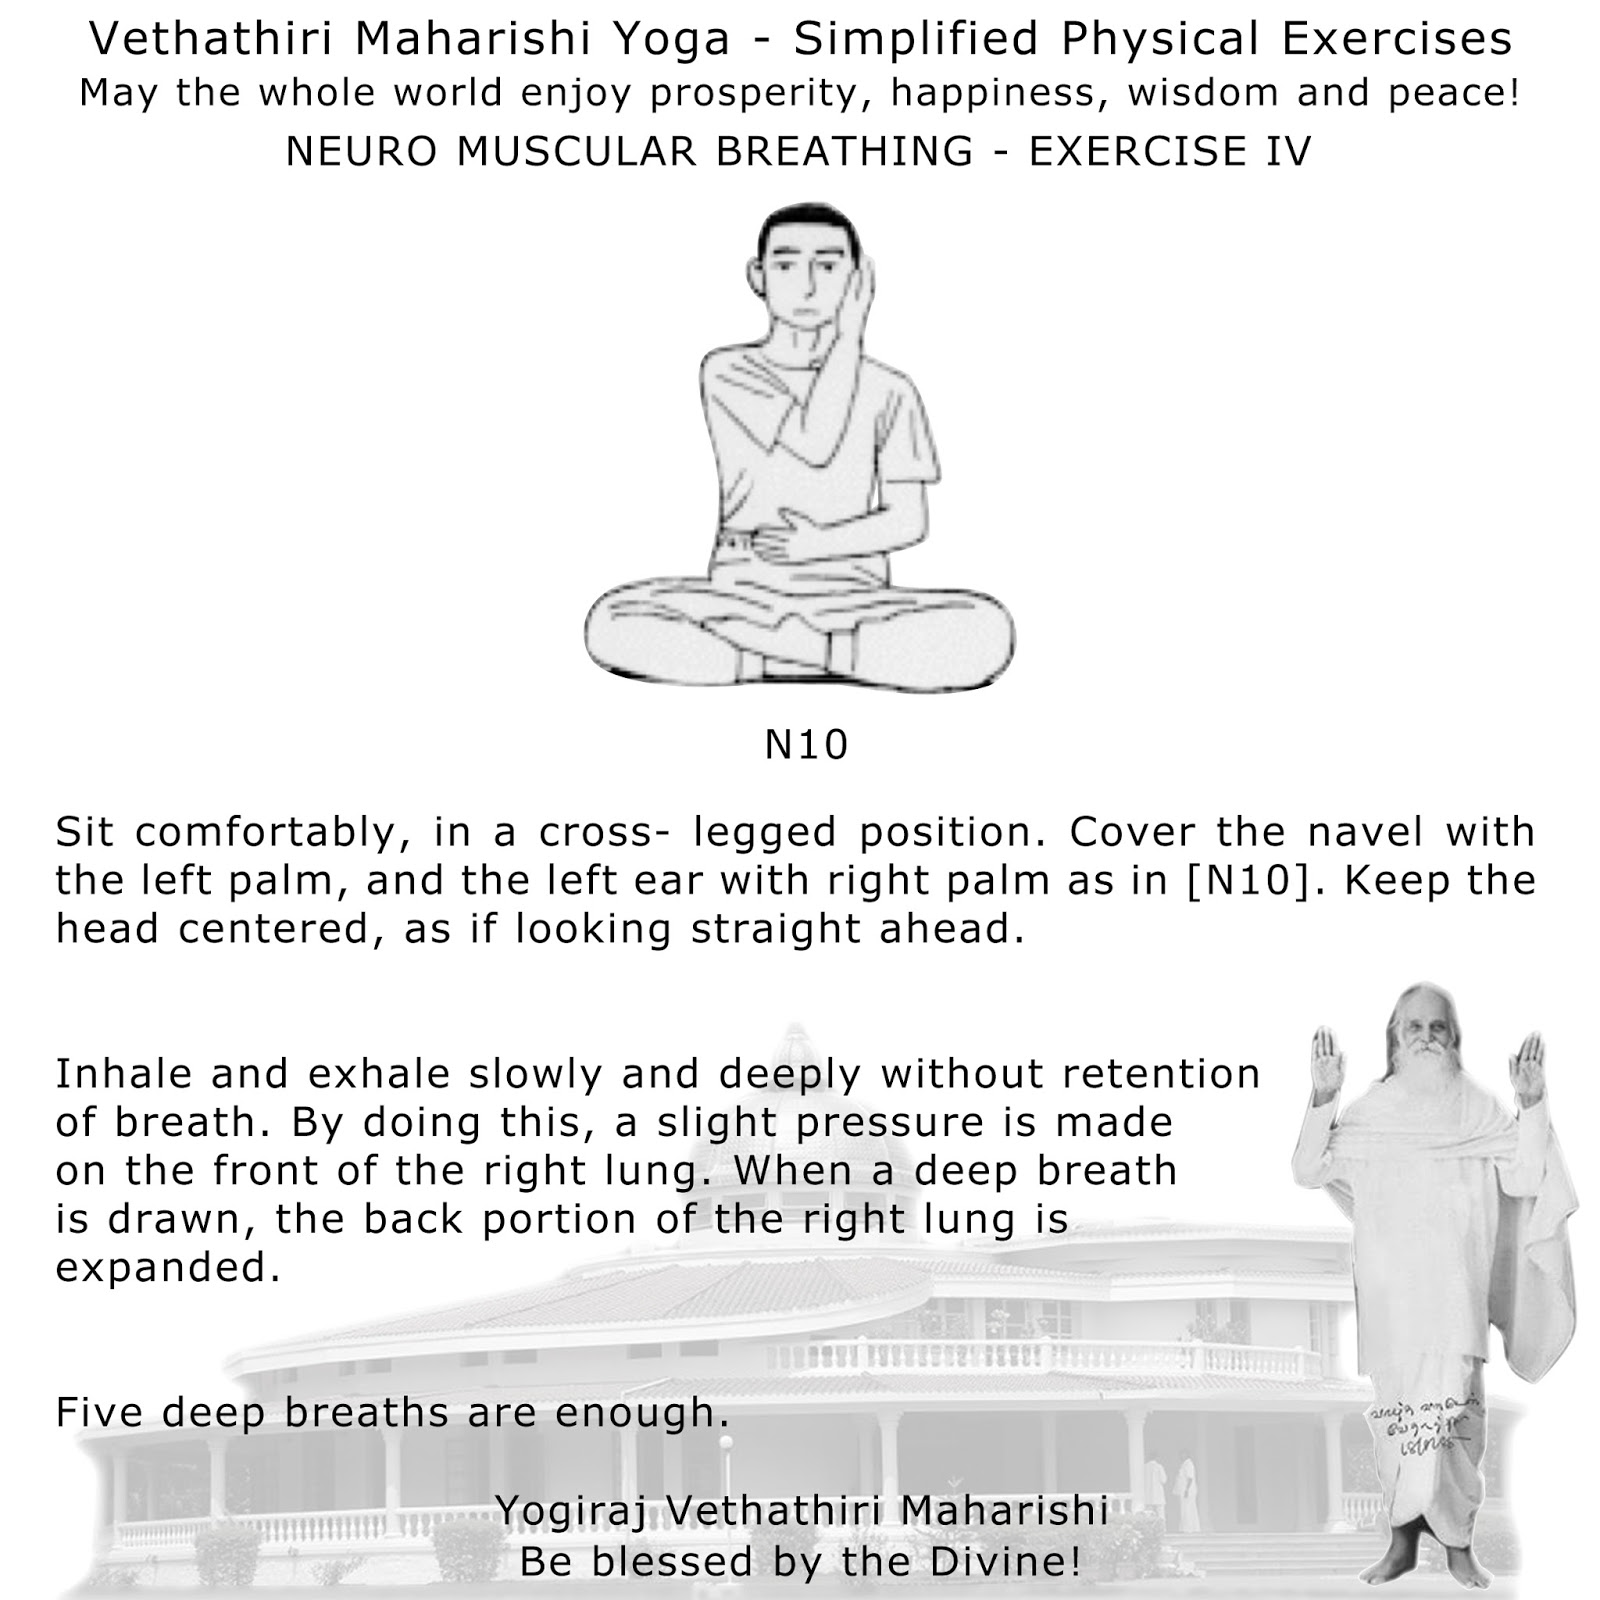 vedathiri maharishi pysical exercise with images pdf